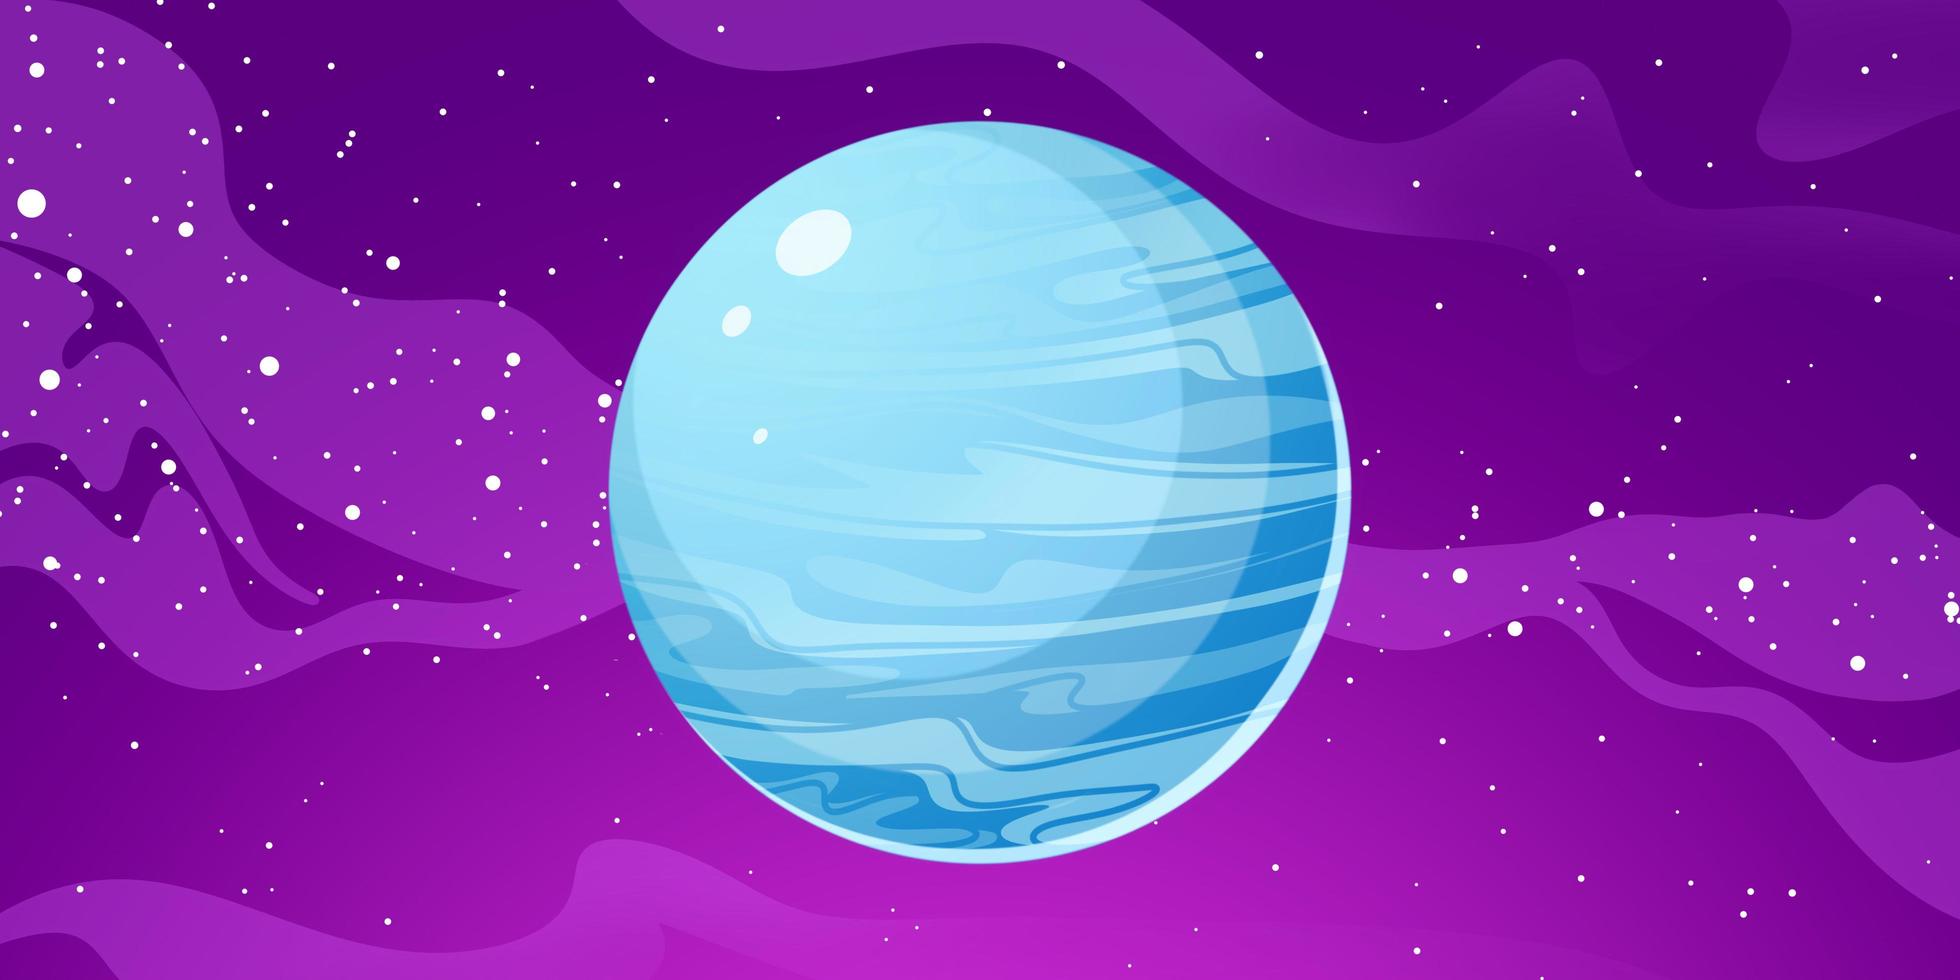 illustration des planeten uranus. Uranus ist der siebte Planet von der Sonne aus foto